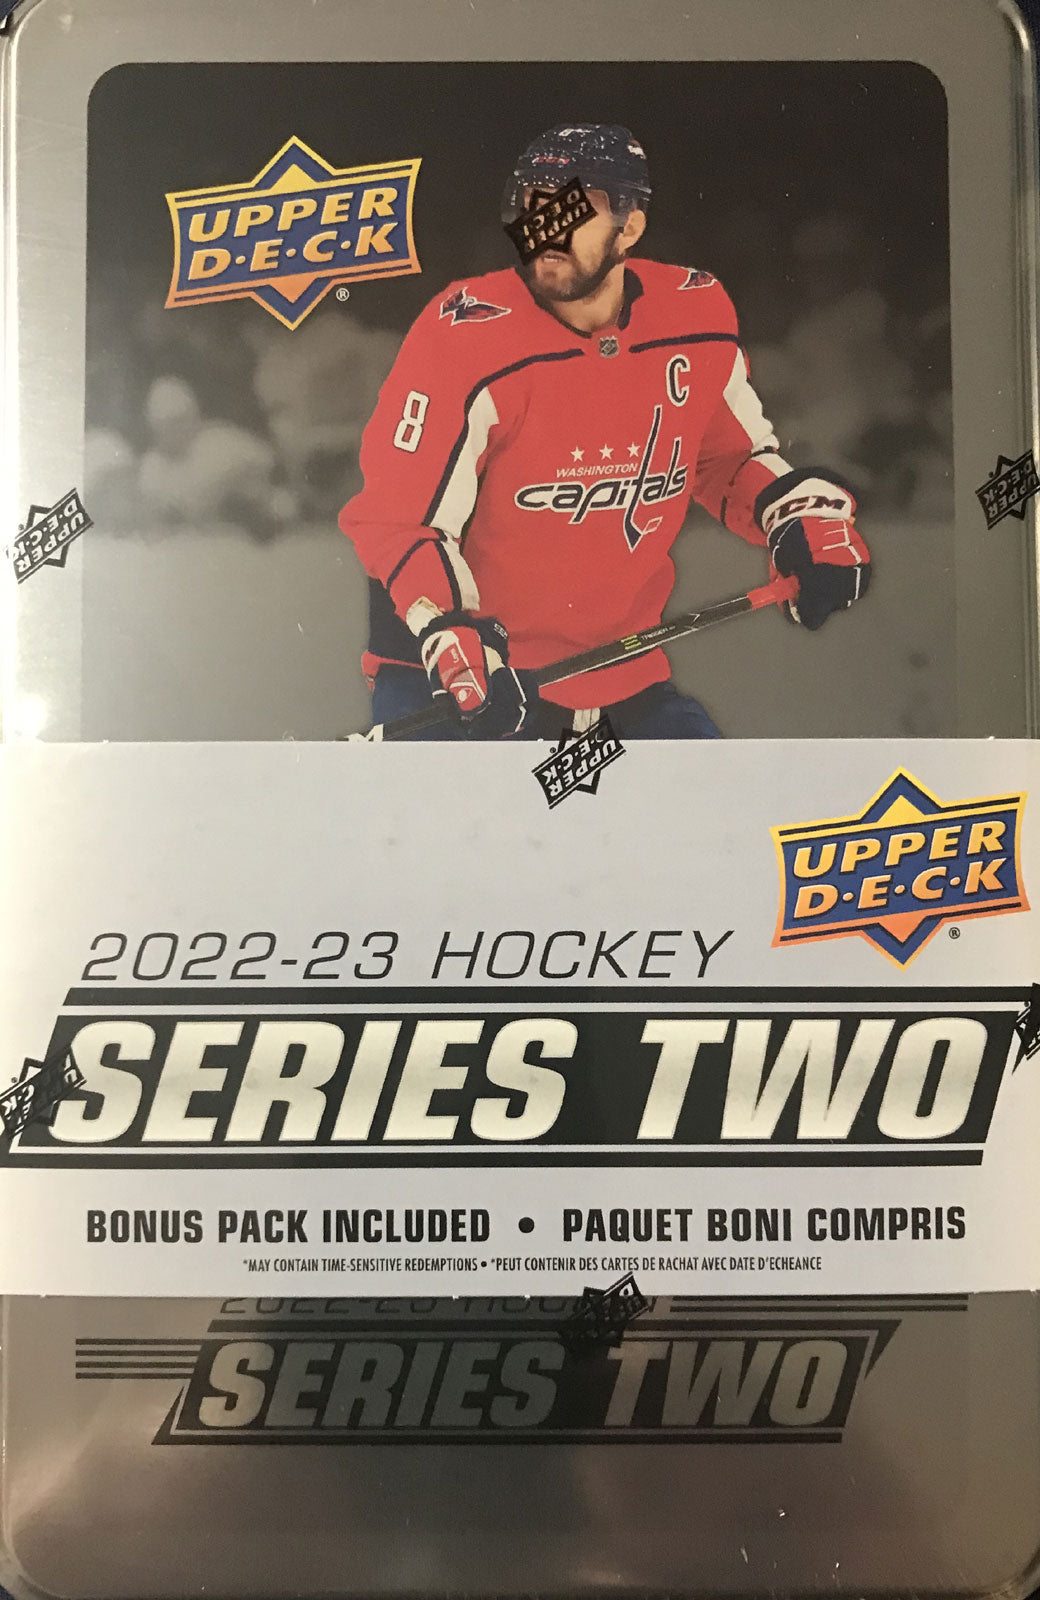 New Jersey Devils 2000-01 Hockey Card Checklist at